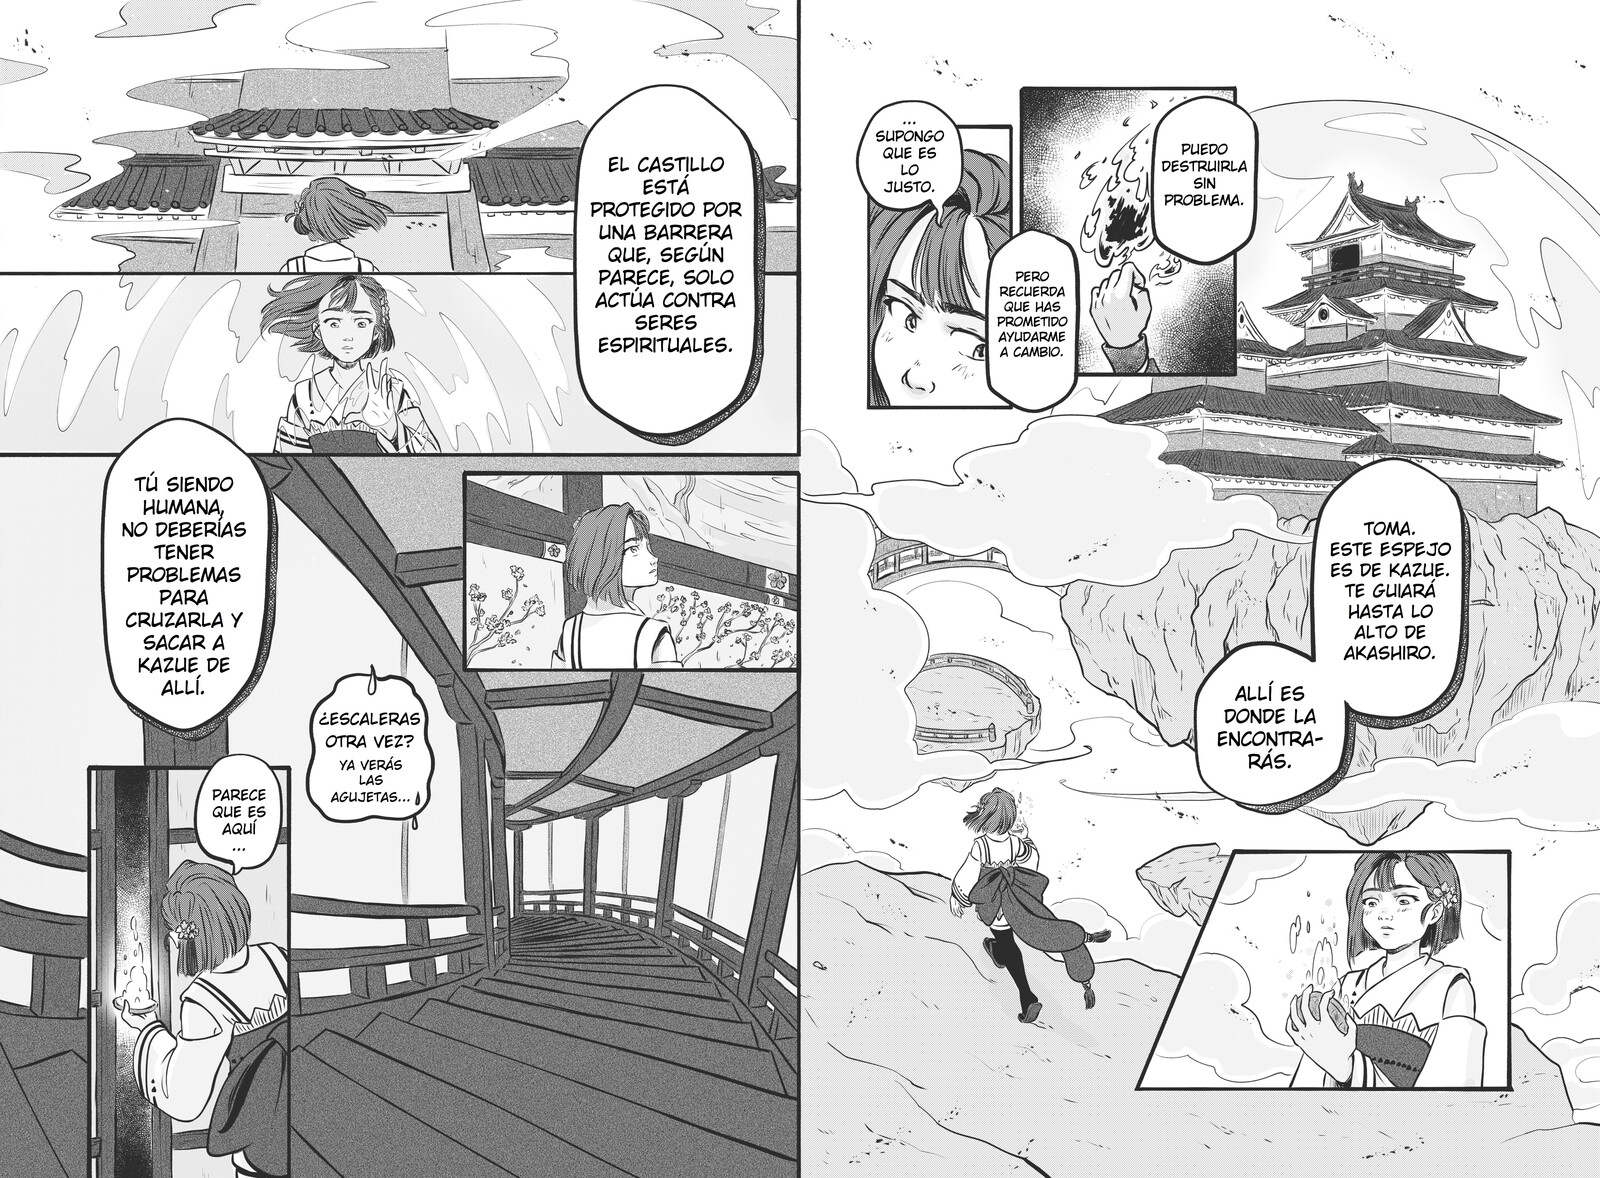 Pages for manga story "Kioka. La profecía al otro lado del espejo" part 2.